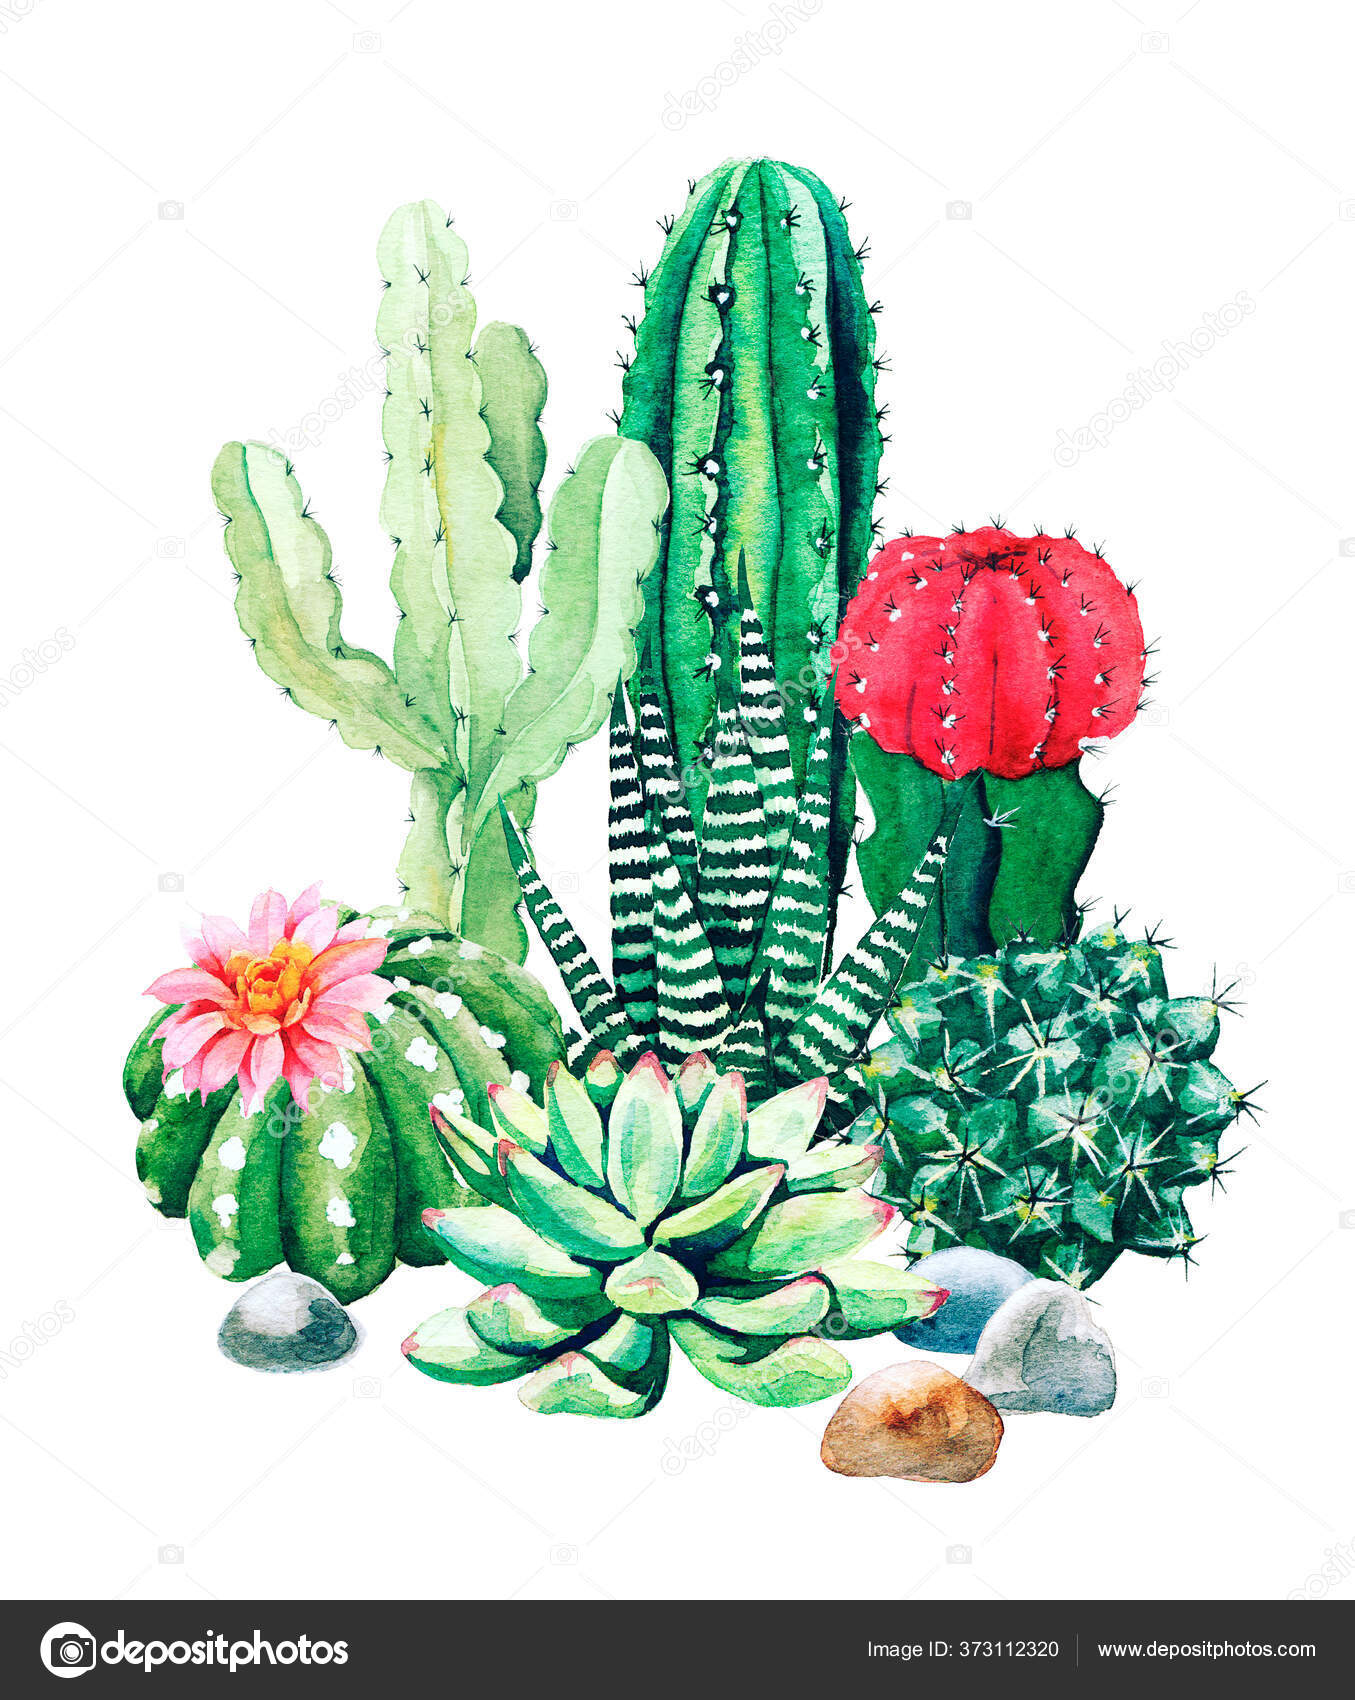 Ilustração de cactos e suculentas, planta suculenta Cactaceae